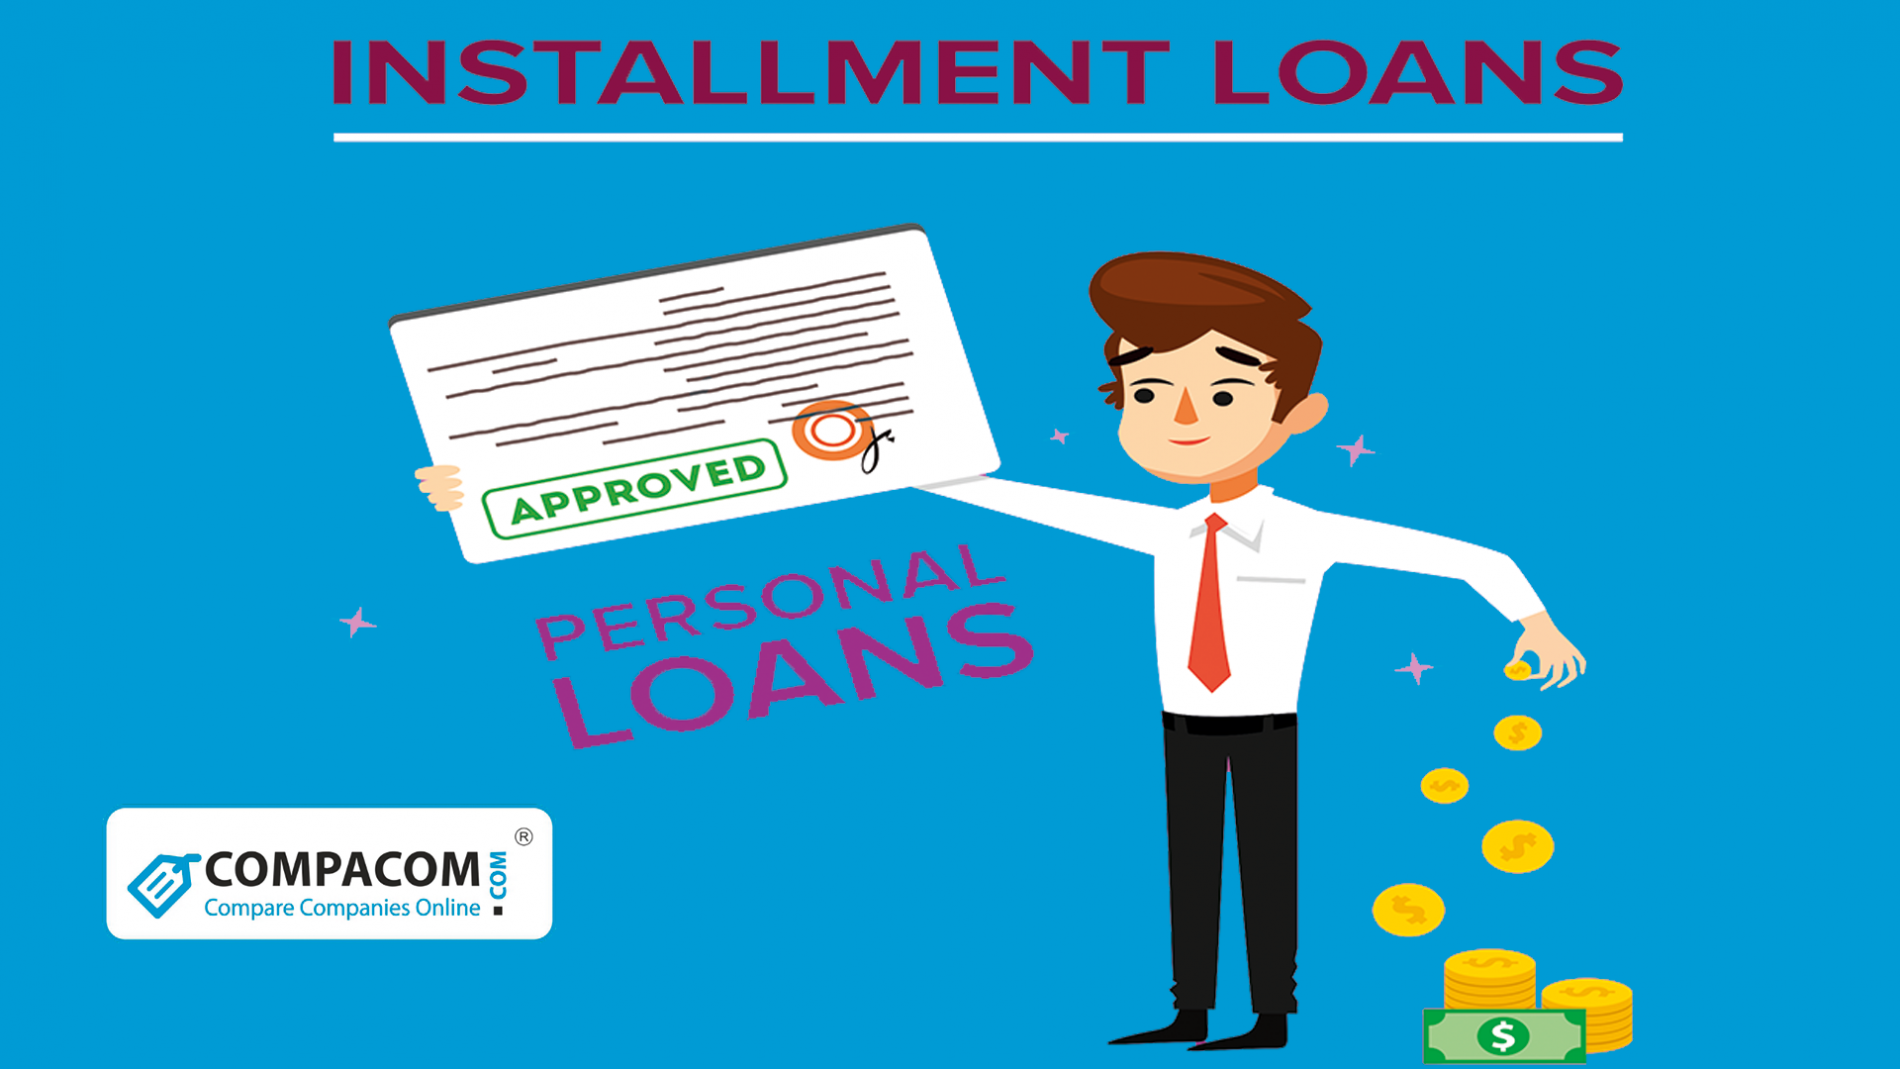 No Credit Check Installment Loans Direct Lenders Compacom